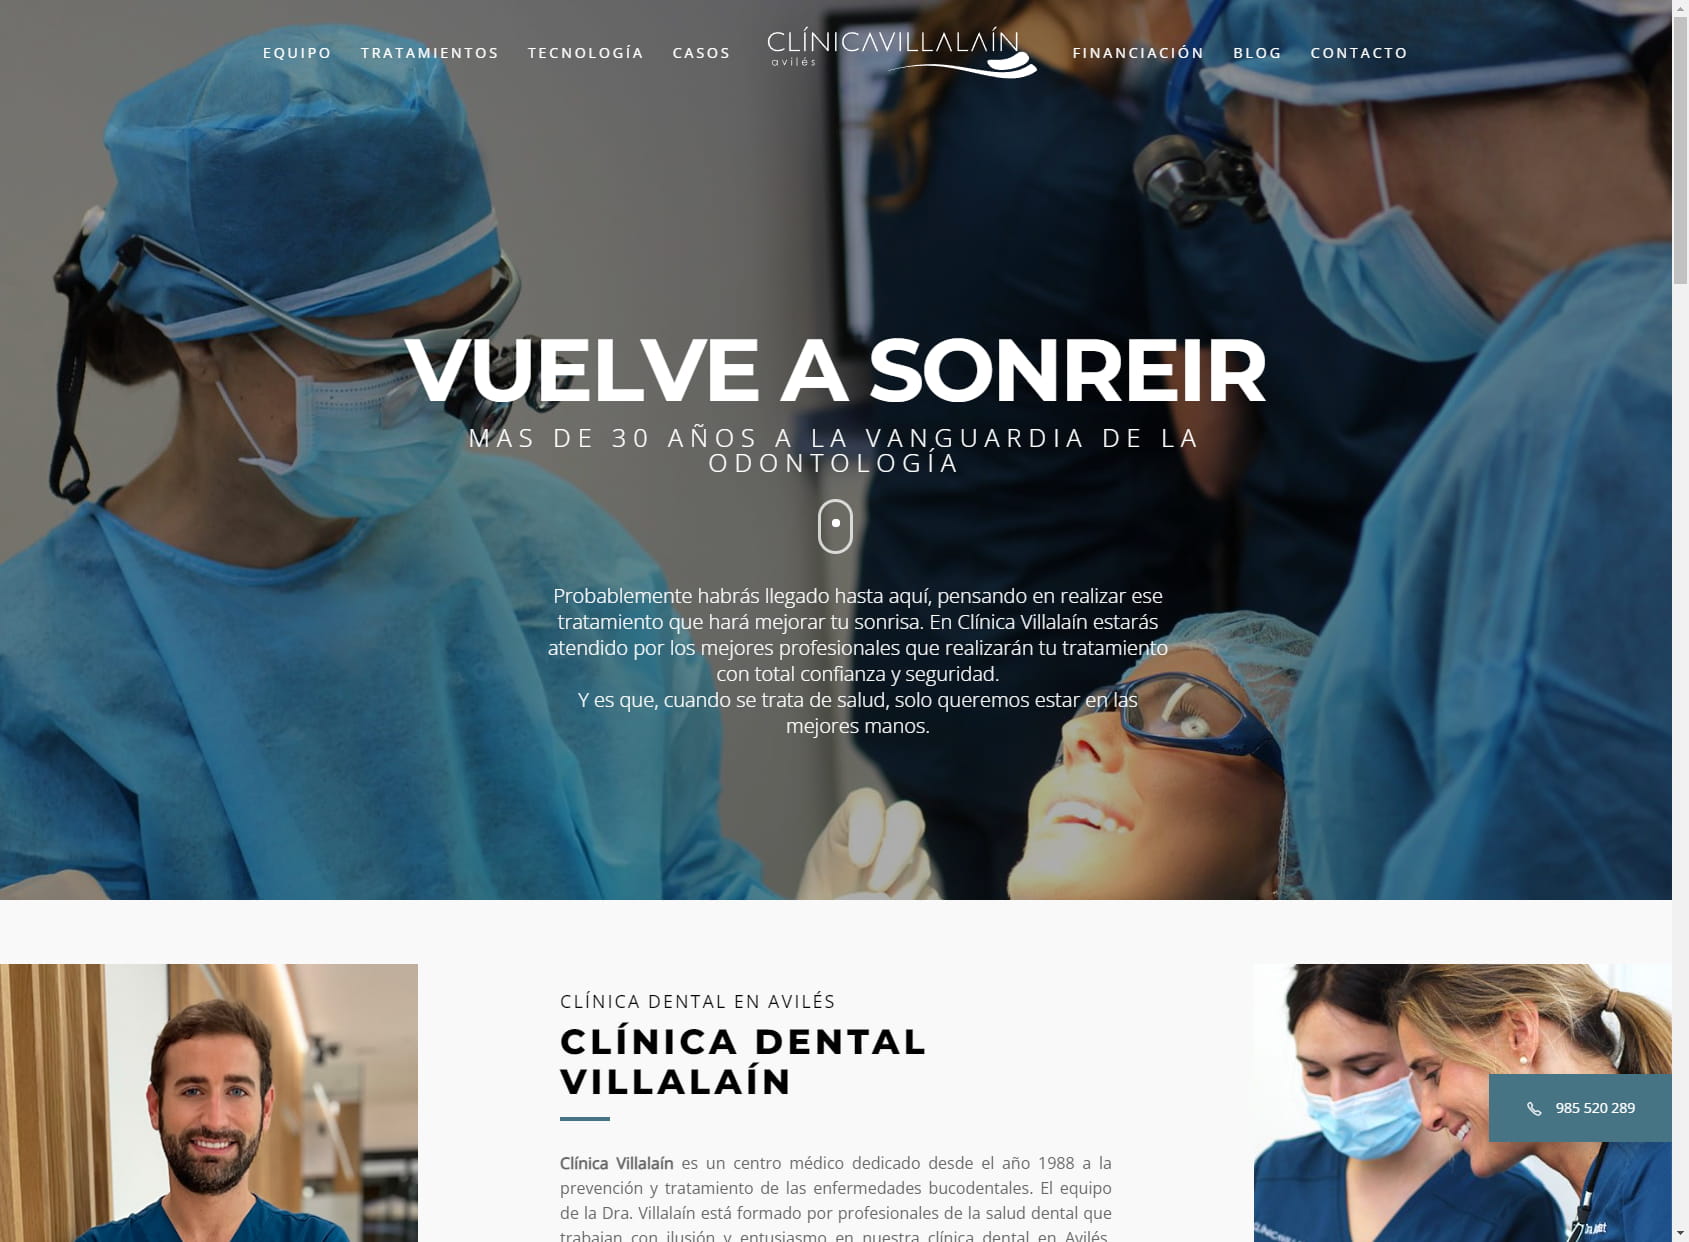 Villalain Clinic - Dental Clinic Aviles